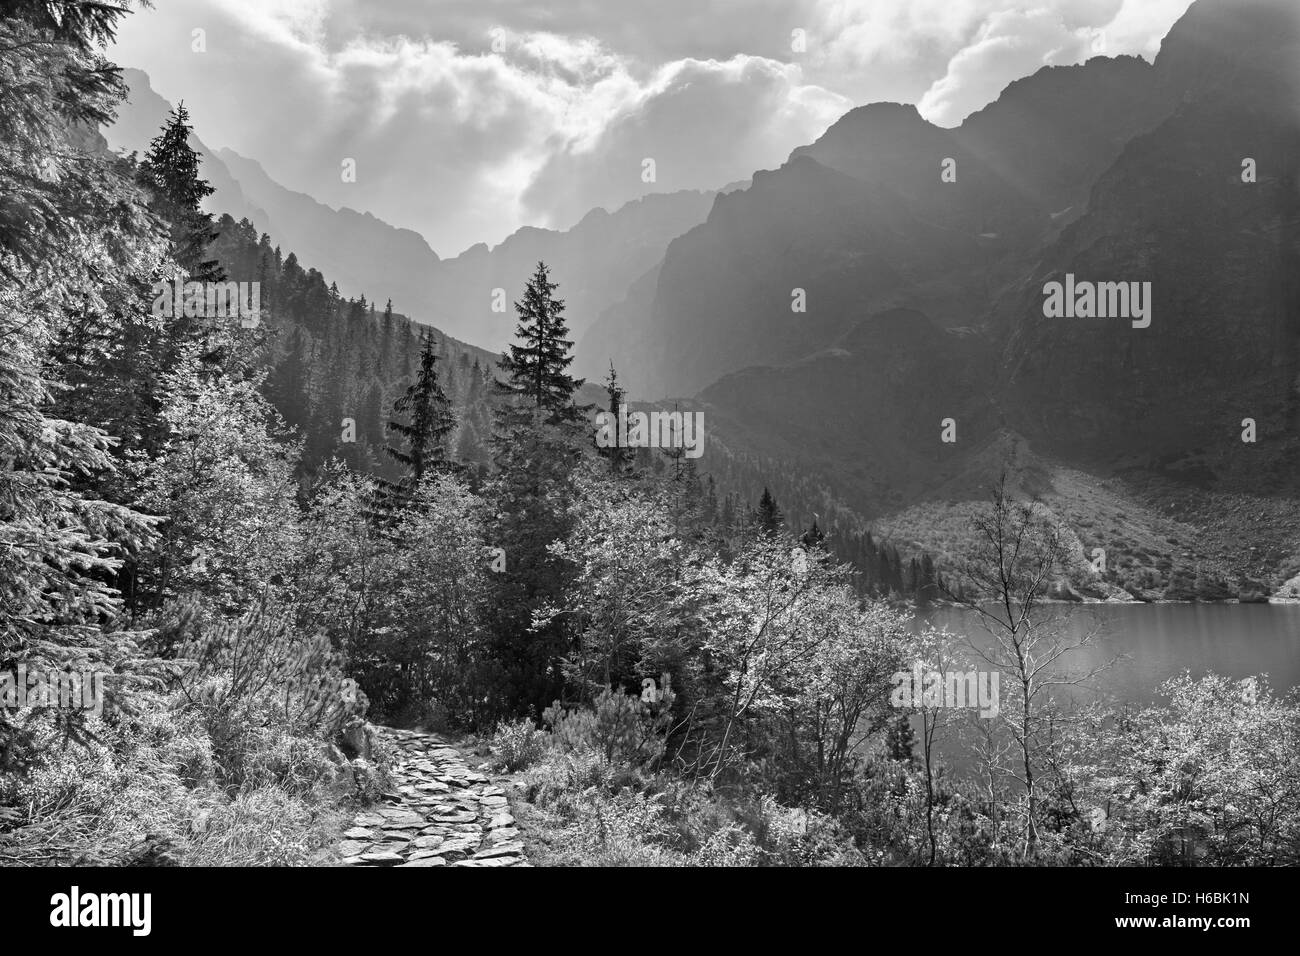 Hohe Tatra - touristische Weg Runde Morskie Oko-See im Gegenlicht Stockfoto